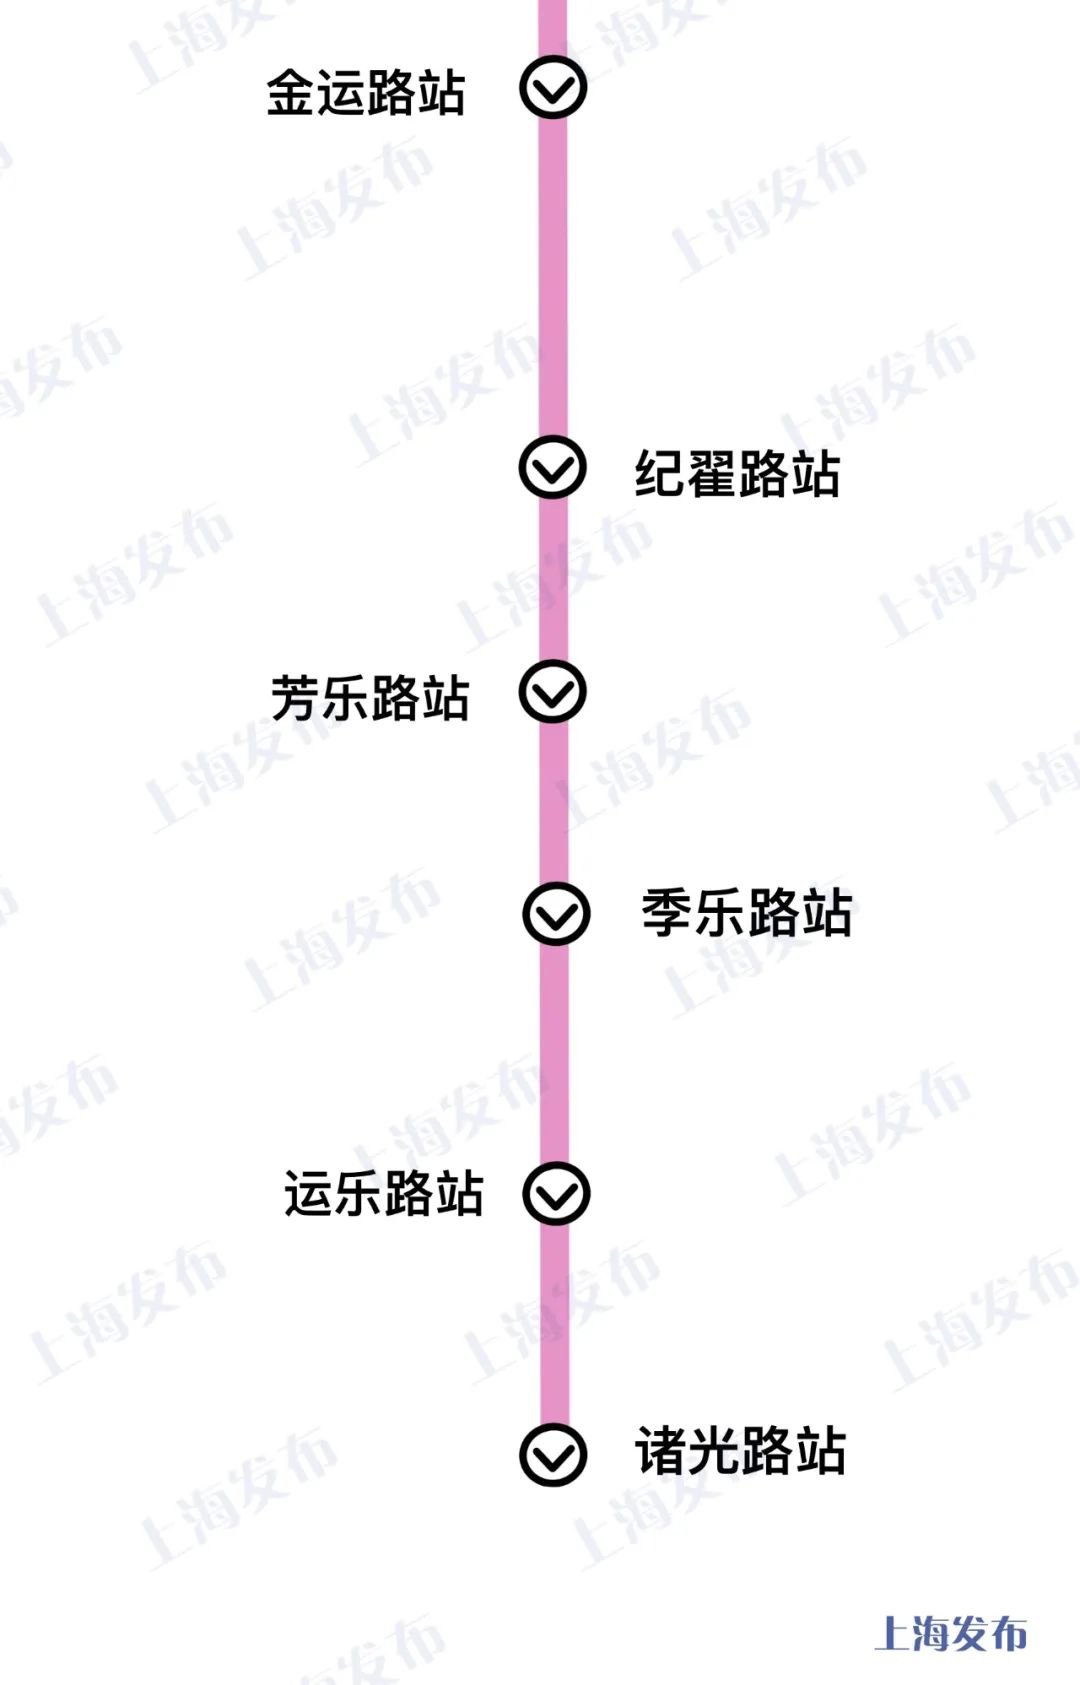 交通出行 地铁指南 上海地铁13号线 > 上海13号线西延伸线路图 站点